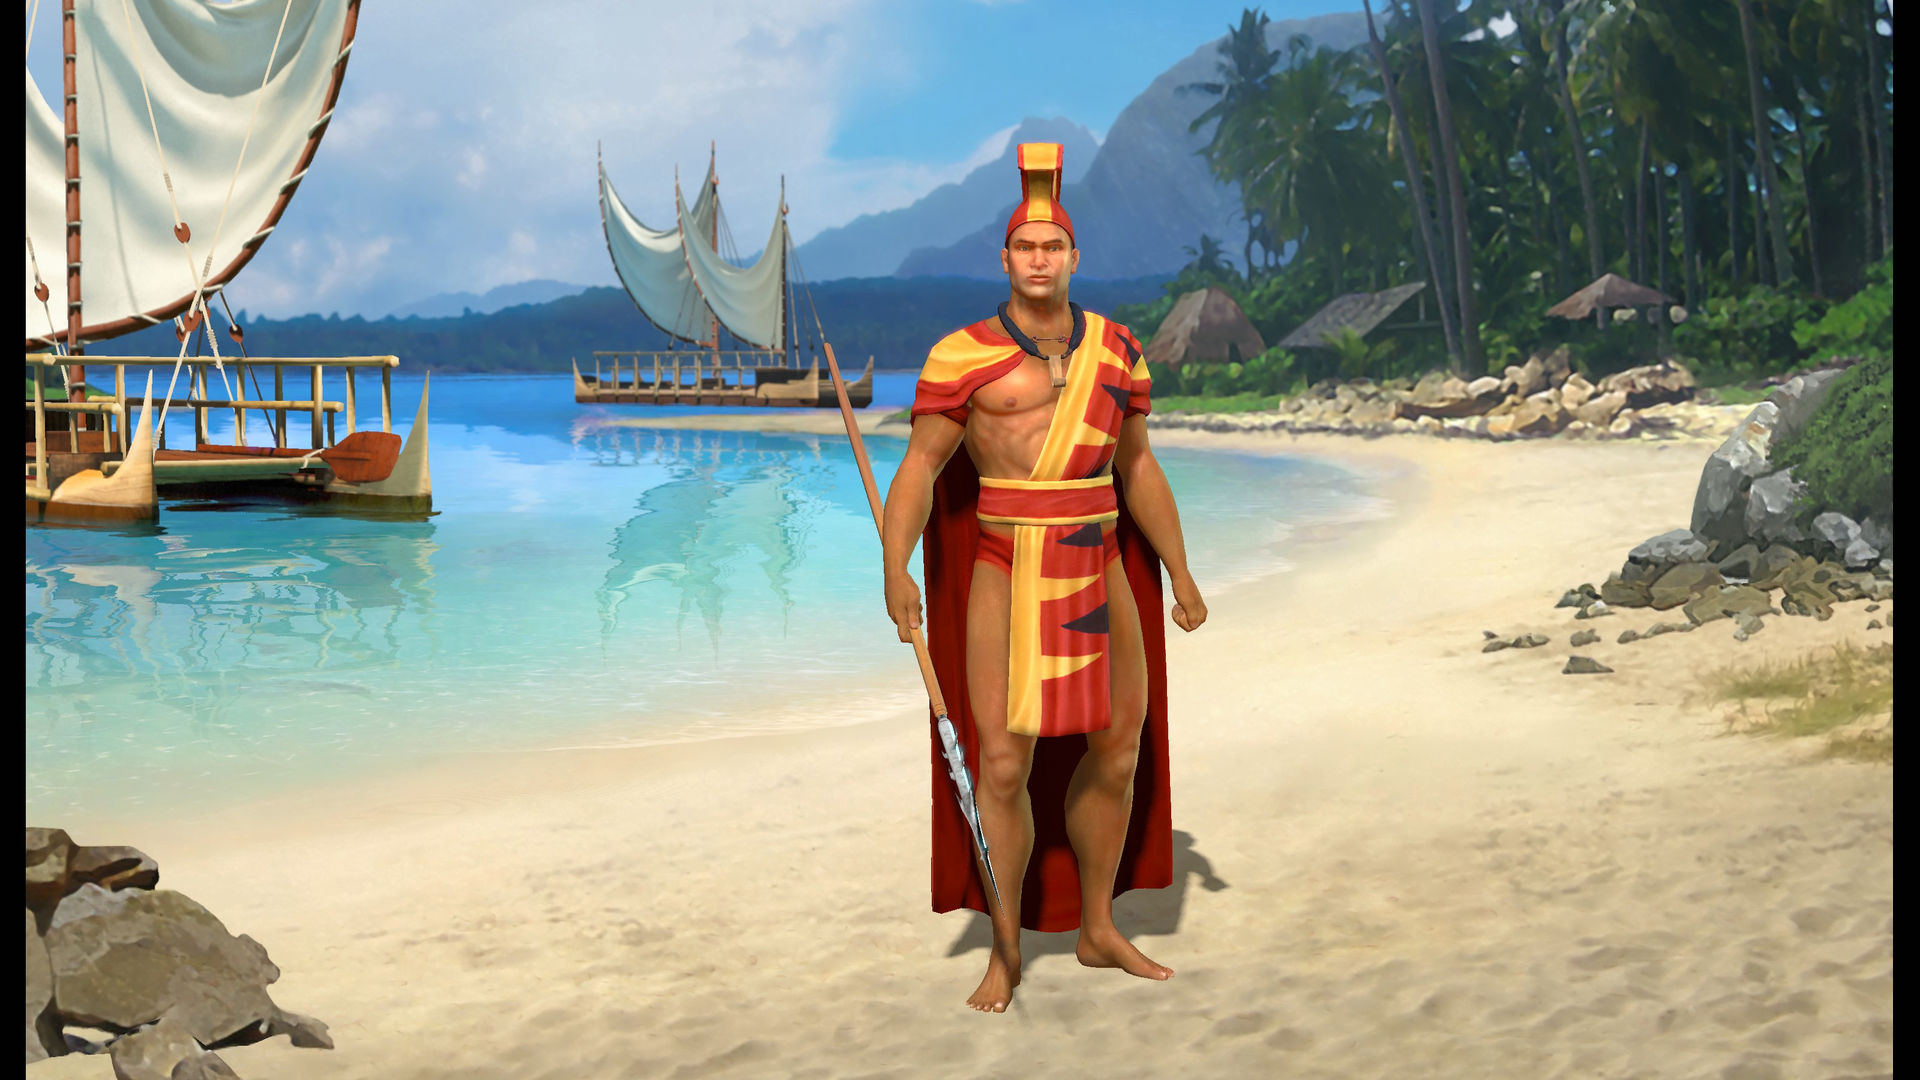 Civilization V - Civ and Scenario Pack: Polynesia Featured Screenshot #1